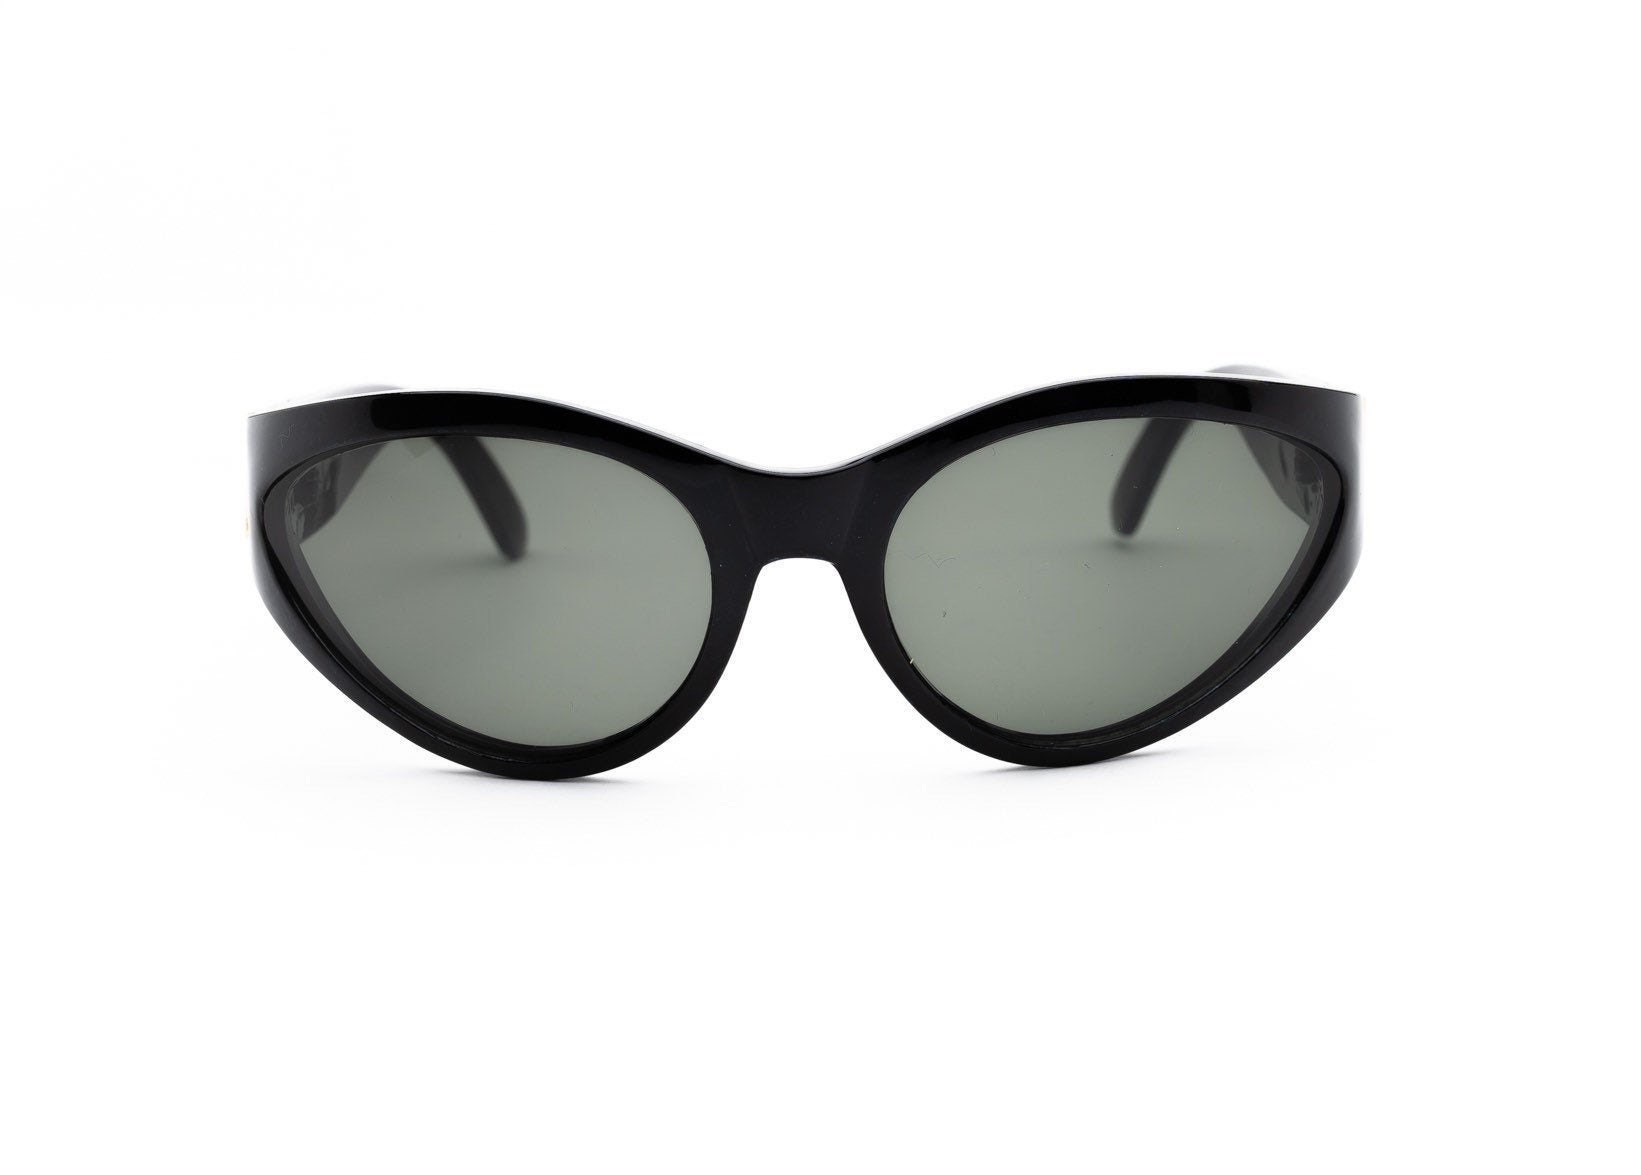 Vintage 2000's sunglasses oval cateye oversized | Etsy